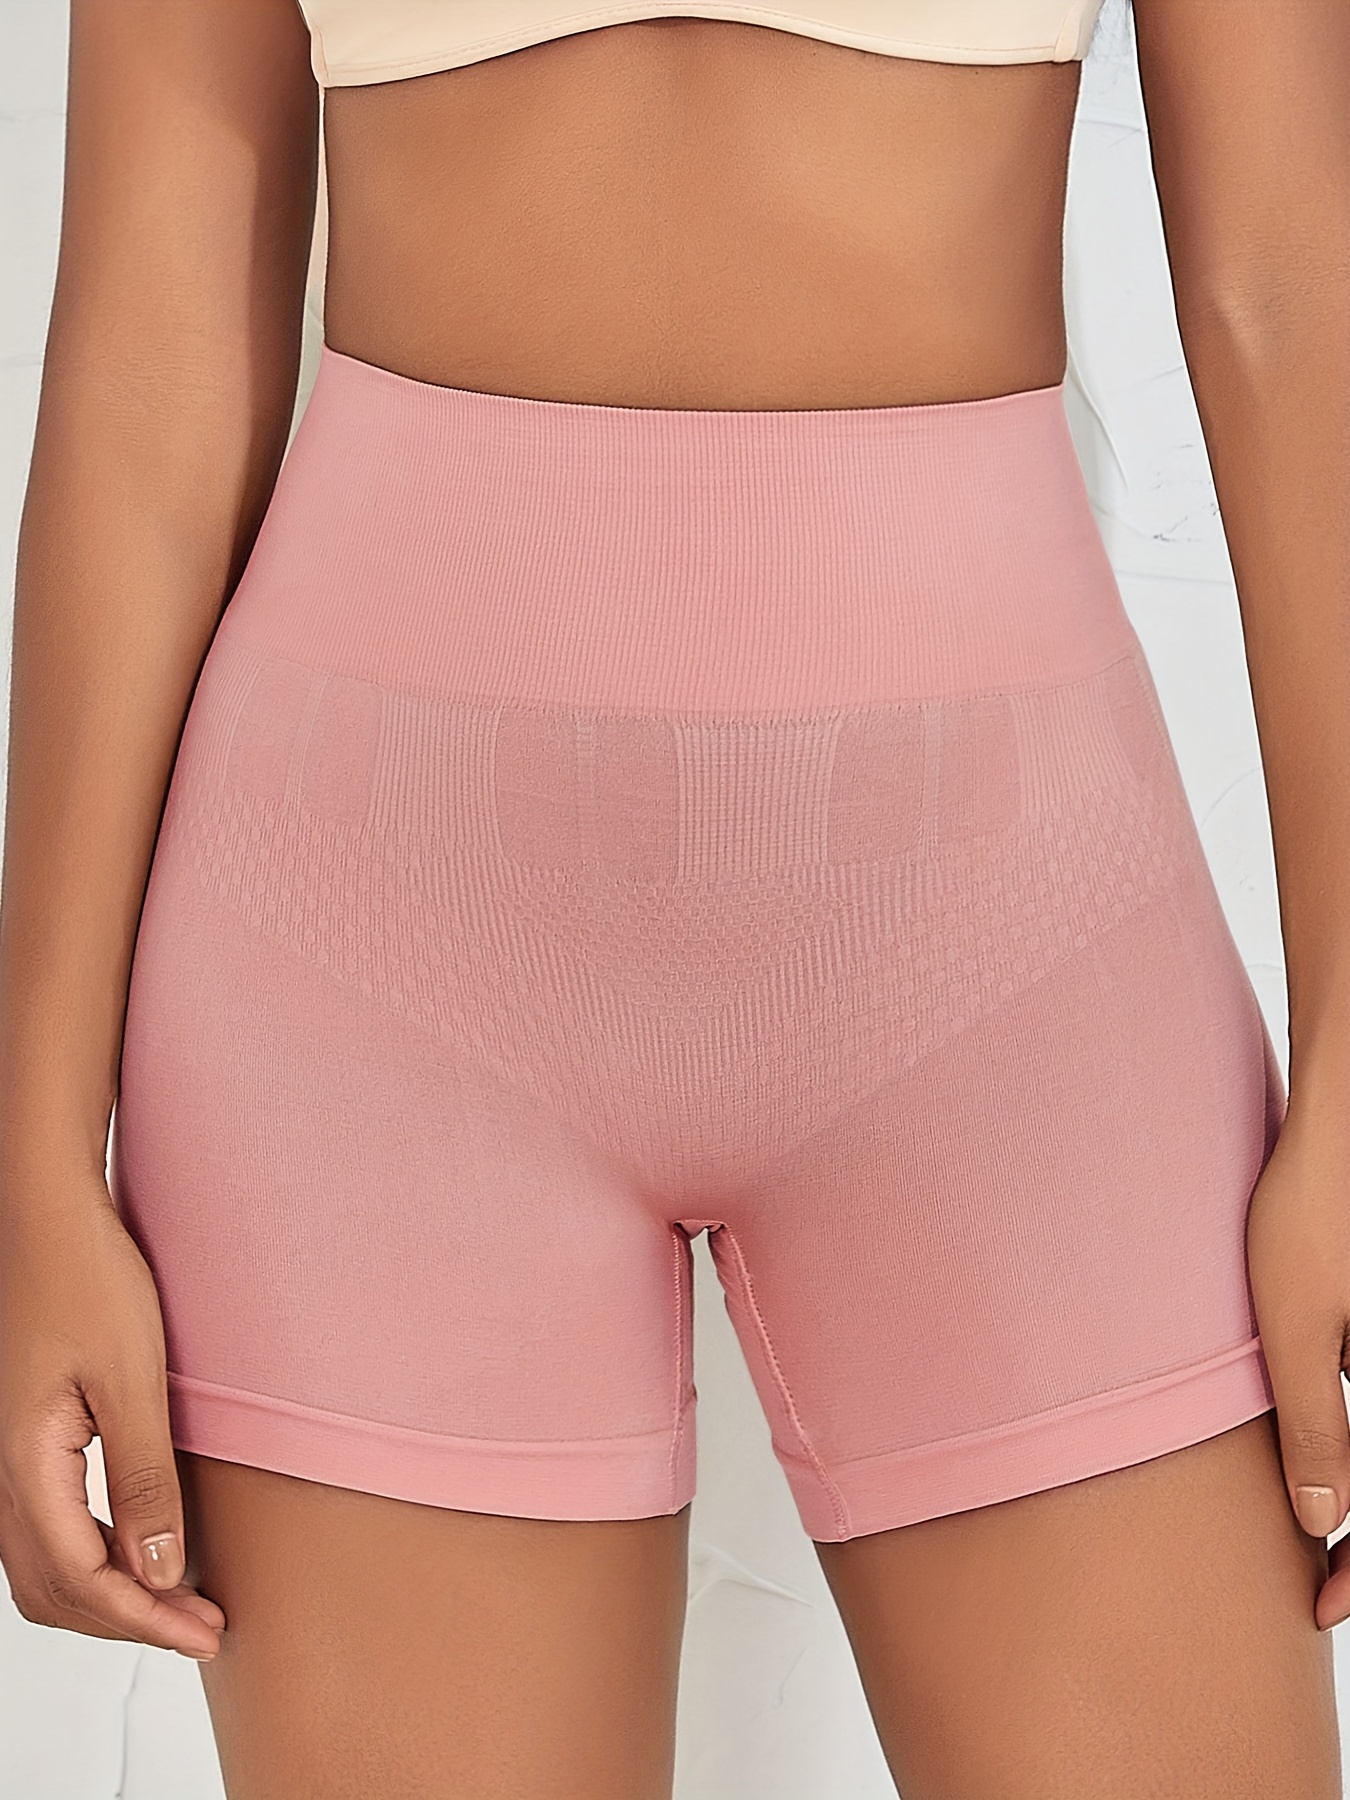 Postpartum Underwear Women - Postpartum panties for abdomen